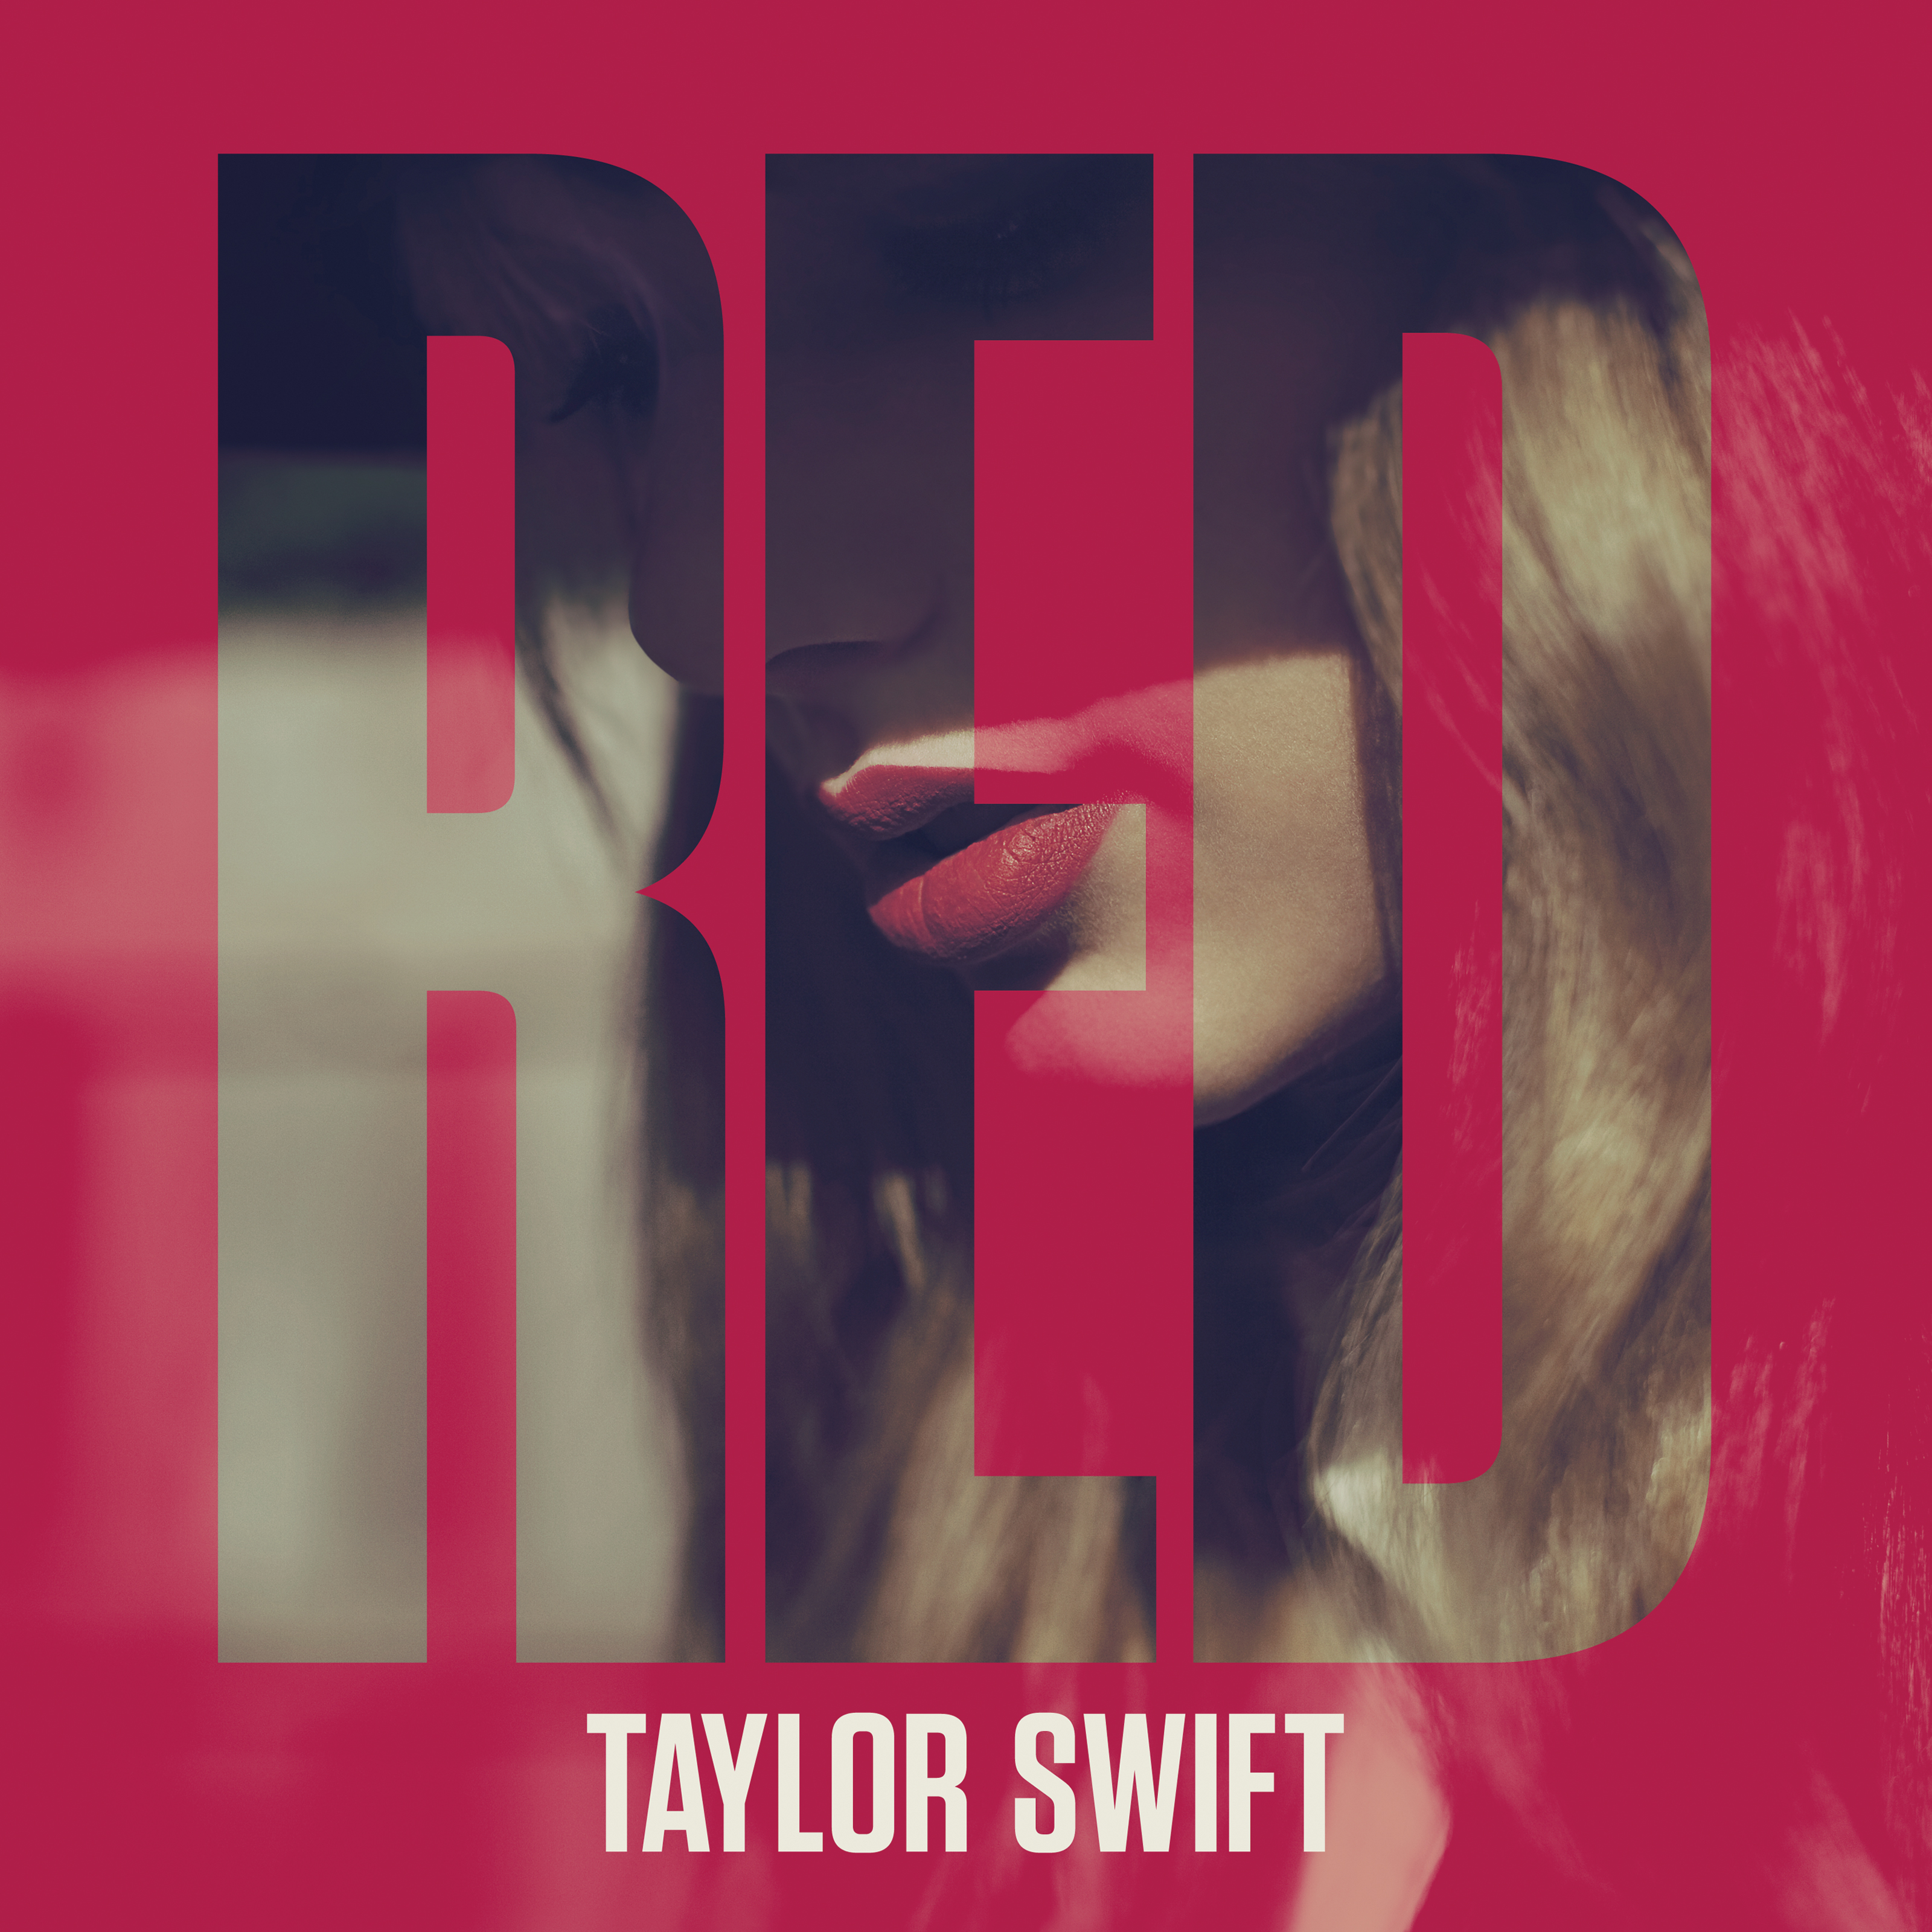 Taylor Swift Red Album By Solerecursos On Deviantart